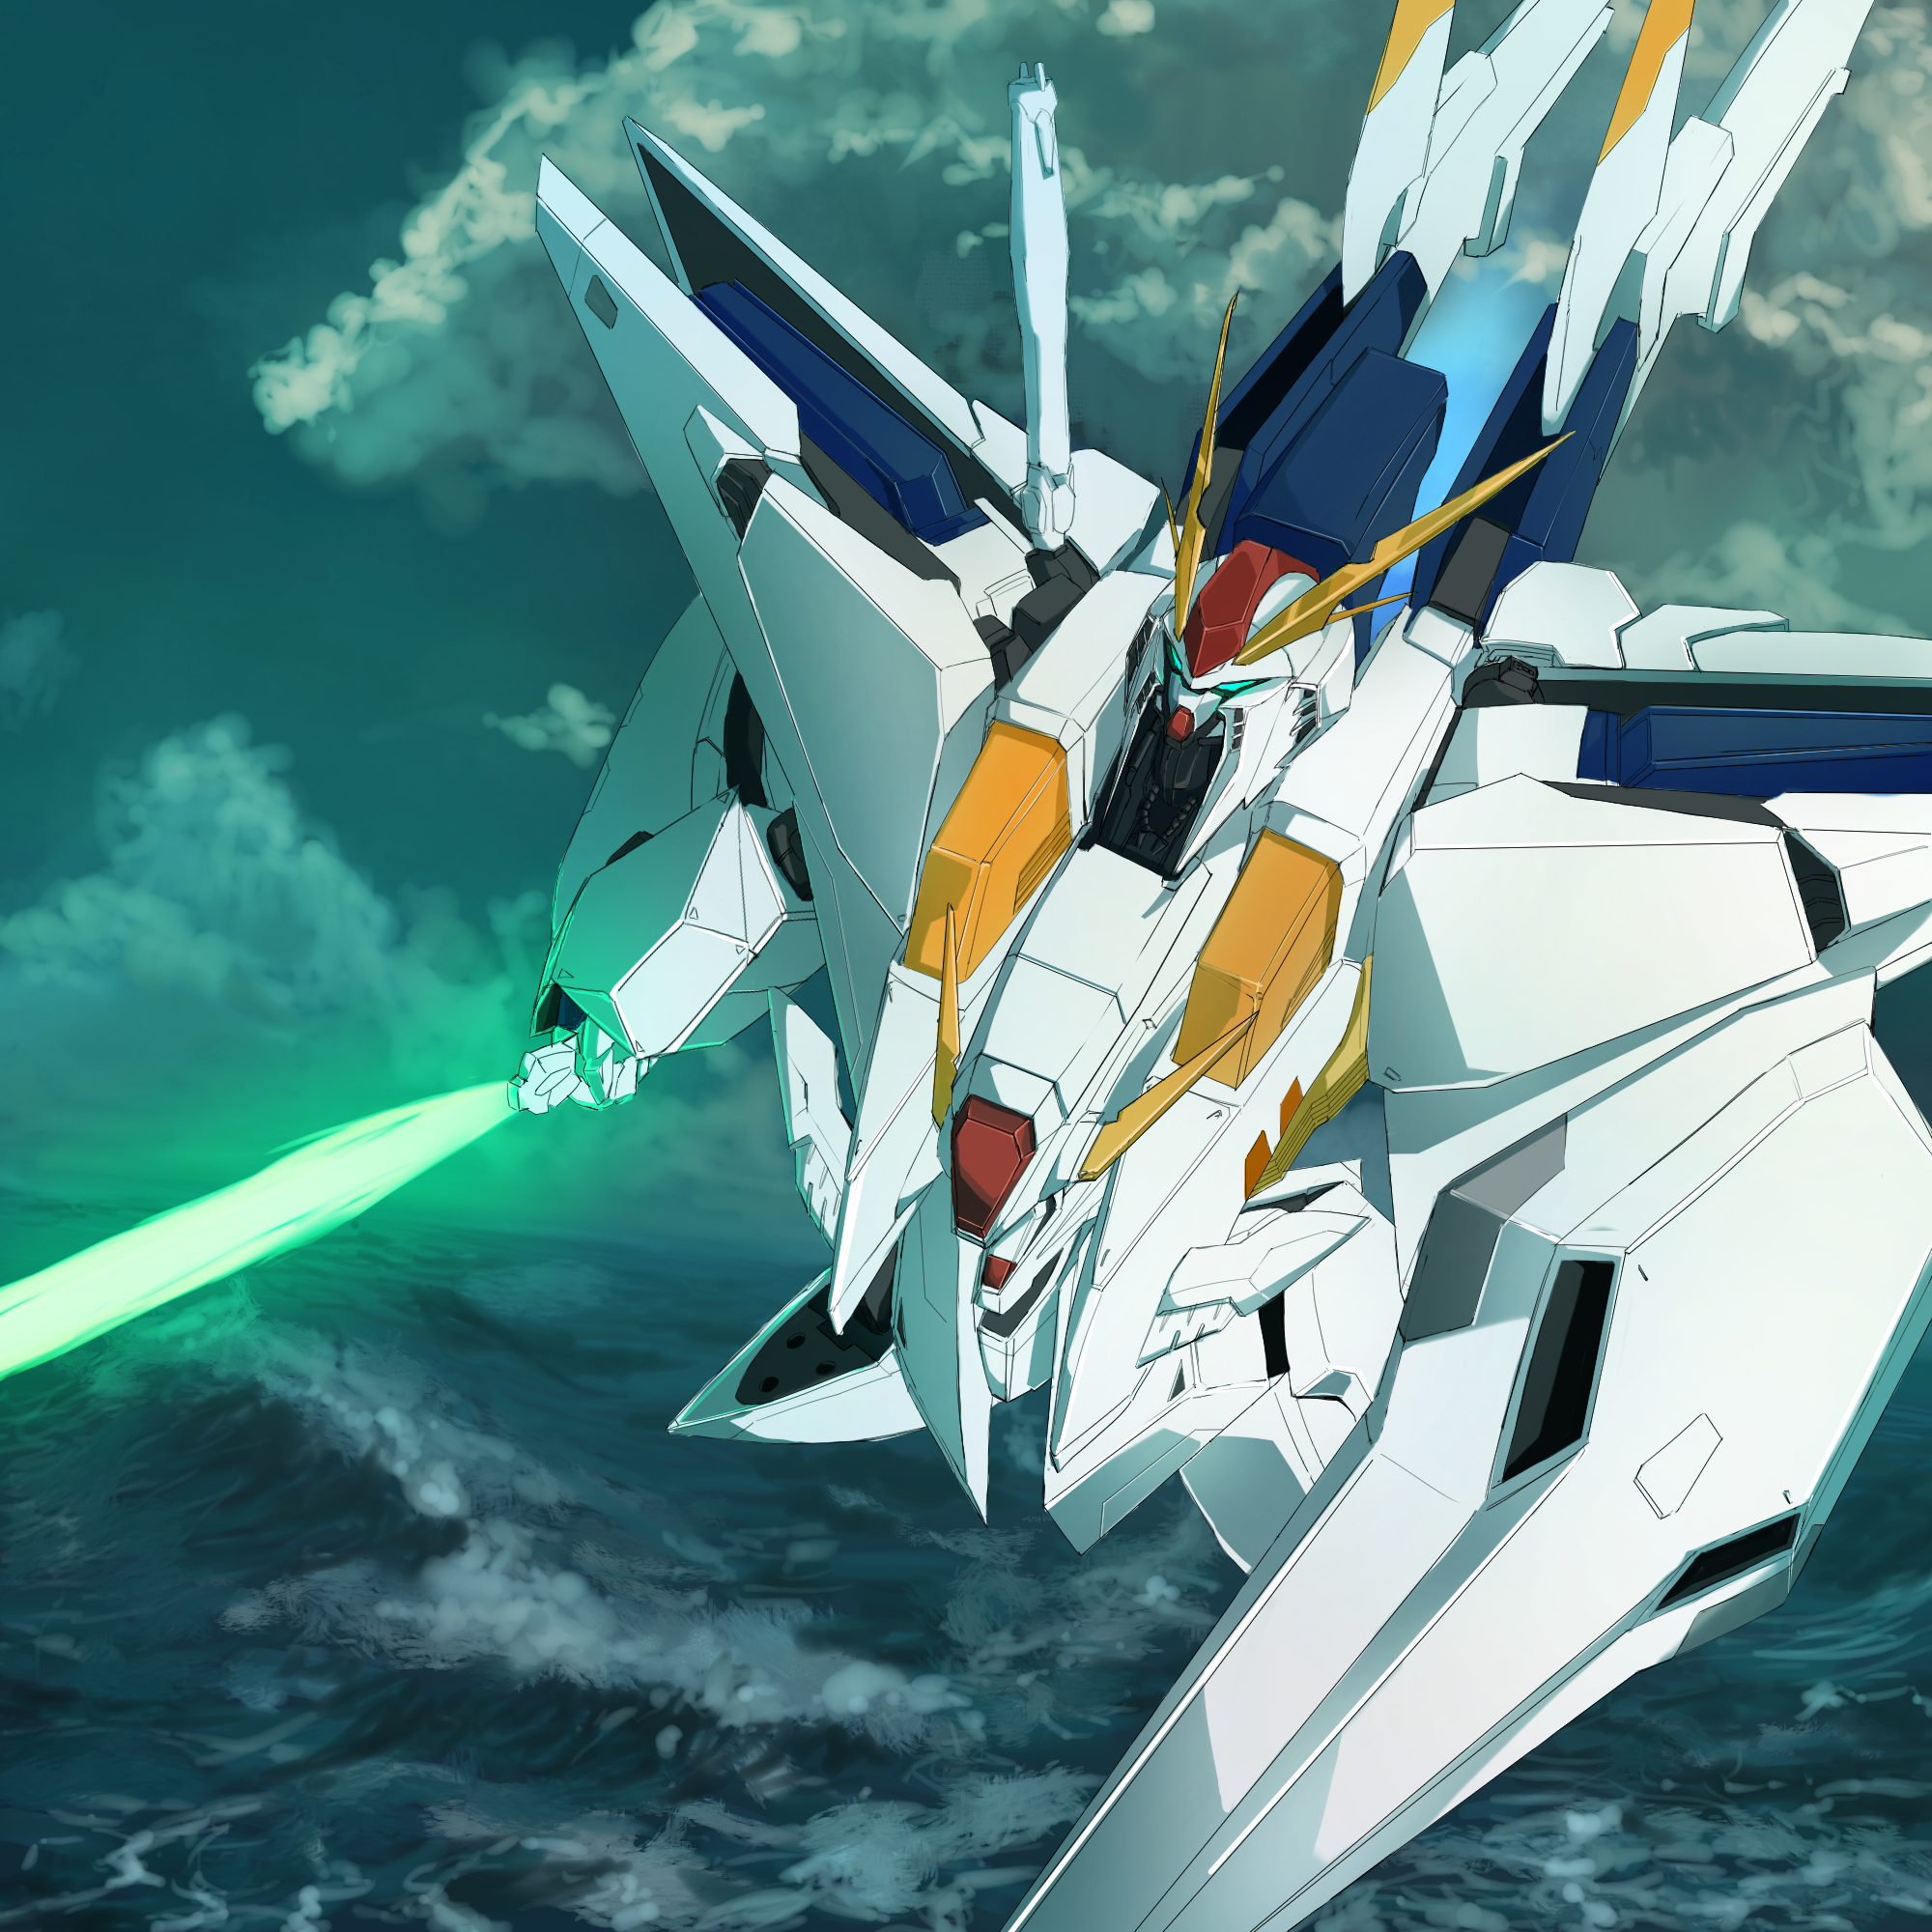 Anime 2000x2000 anime mechs Super Robot Taisen Gundam Ξ Gundam Mobile Suit Gundam Hathaway artwork digital art fan art